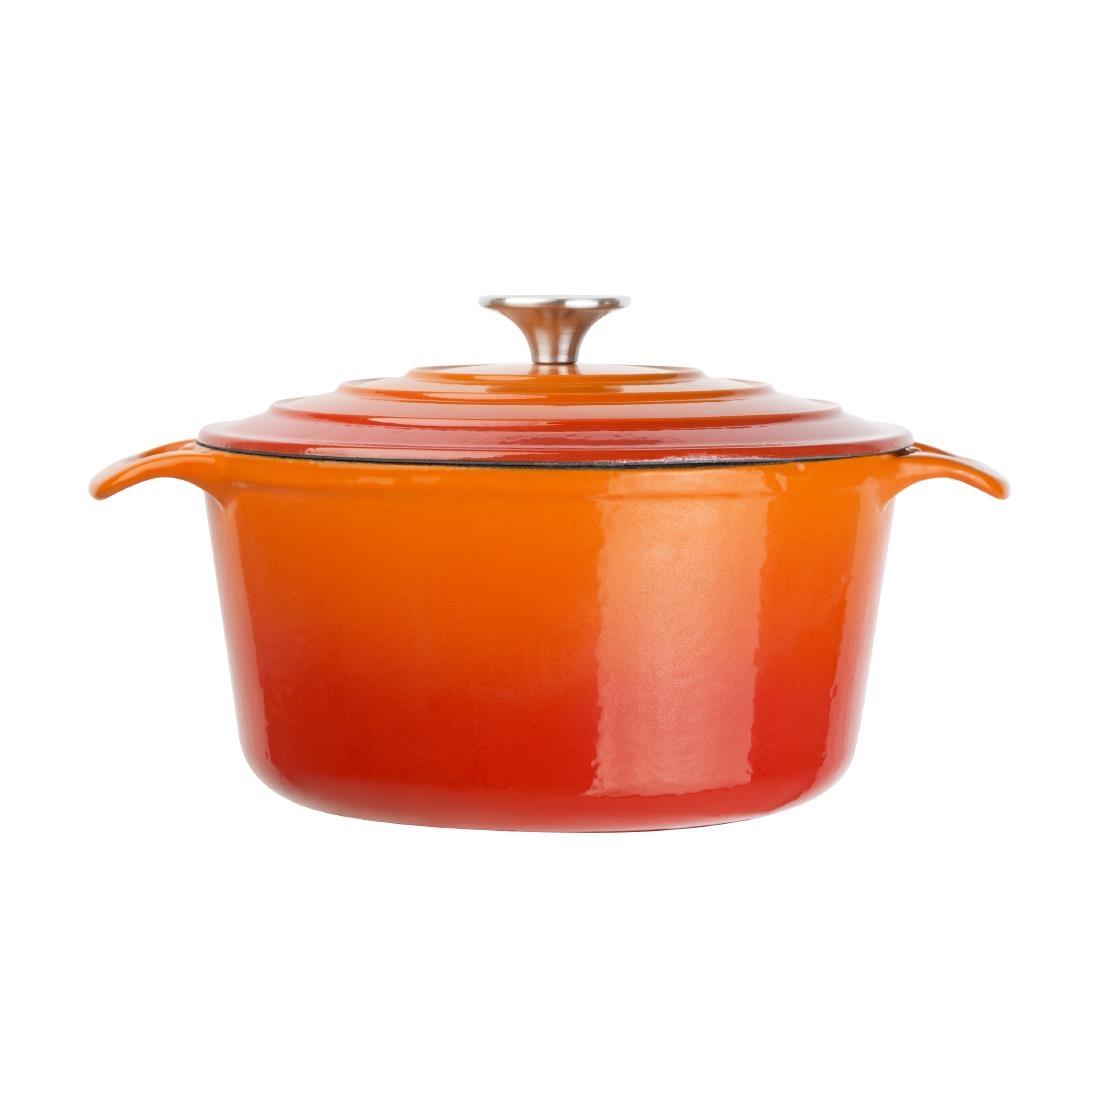 Vogue Orange Round Casserole Dish 4Ltr - GH303  - 2